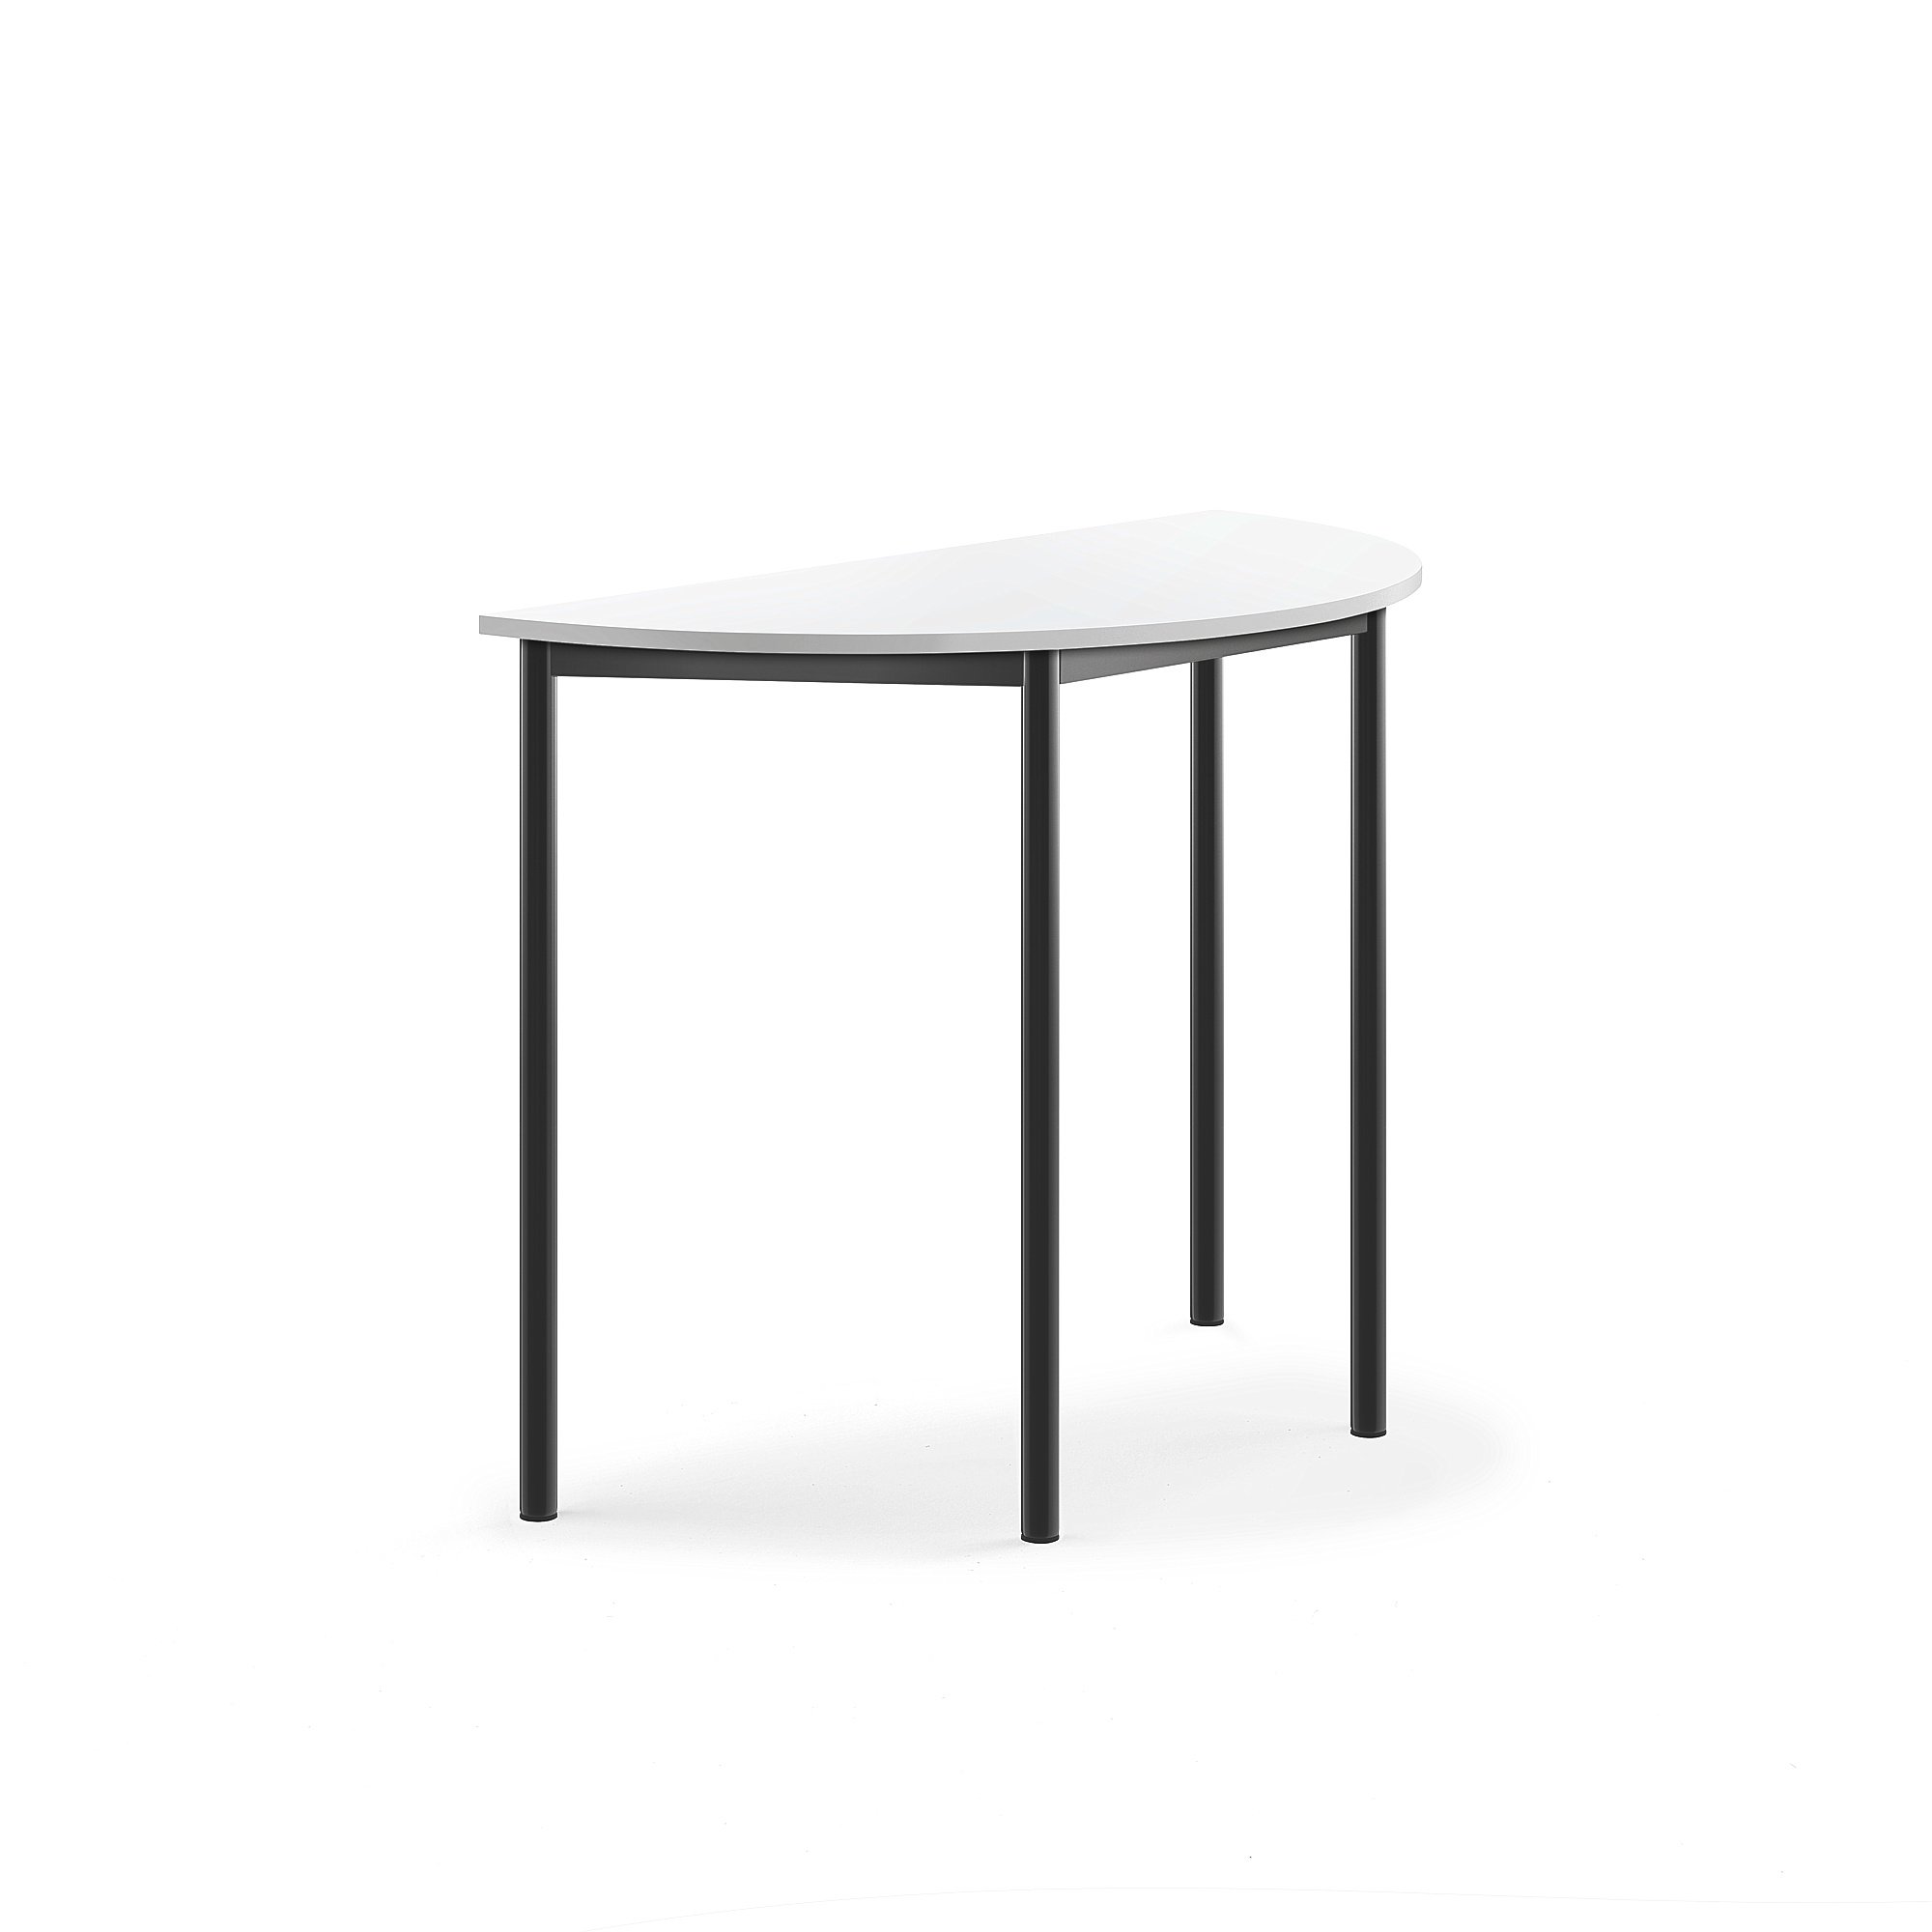 Stůl SONITUS, půlkruh, 1200x600x900 mm, antracitově šedé nohy, HPL deska tlumící hluk, bílá